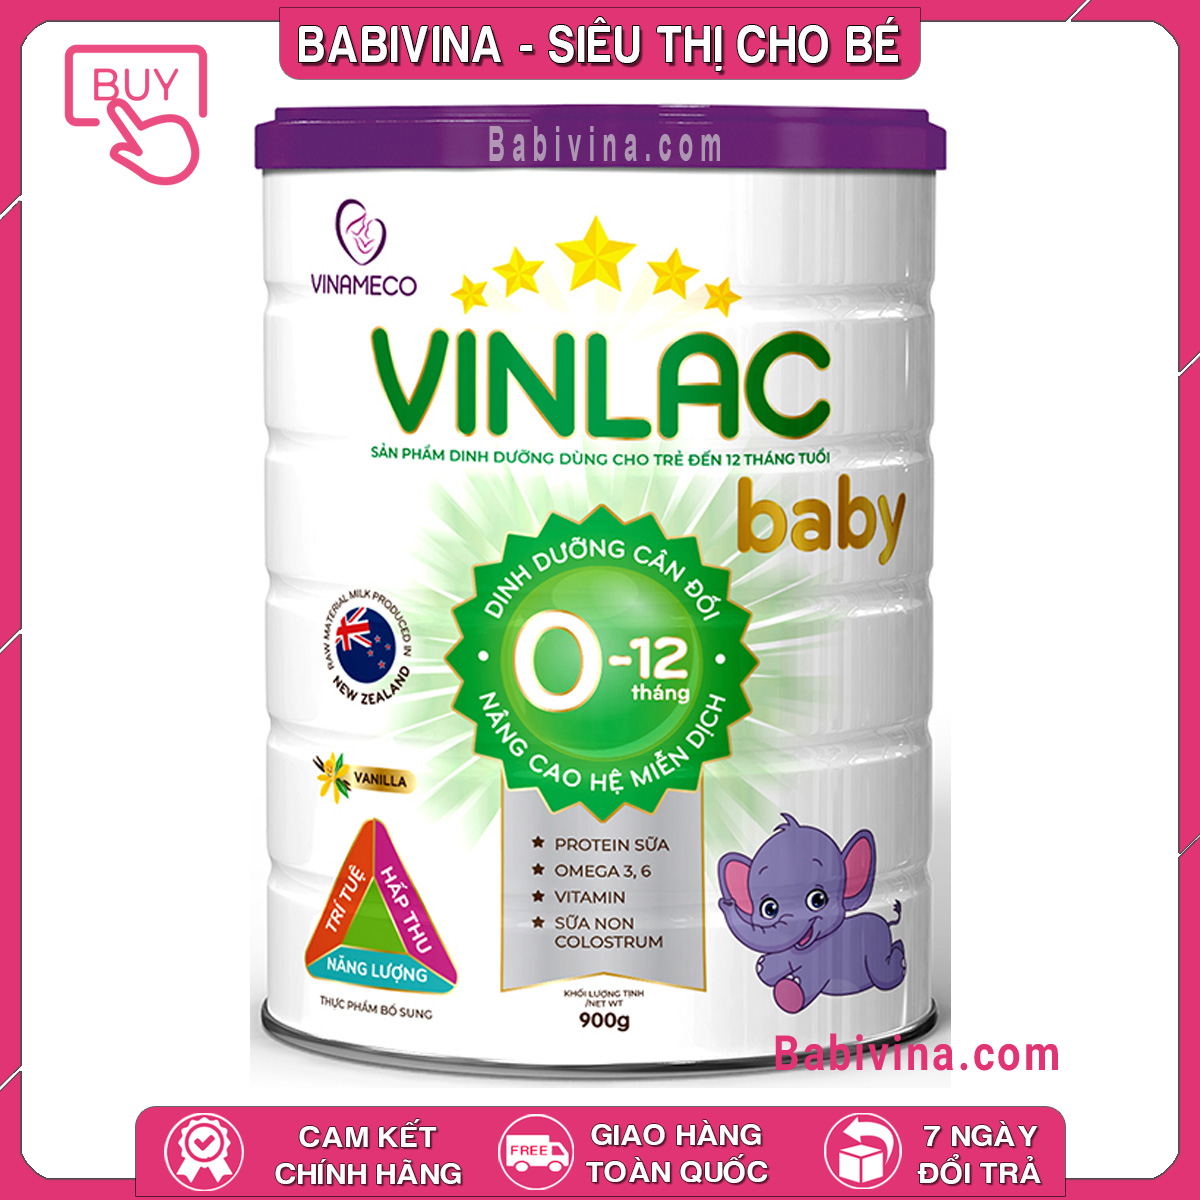 CHÍNH HÃNG Sữa Vinlac Baby 900g Dinh Dưỡng Cho Trẻ Từ 0-12 Tháng Tuổi